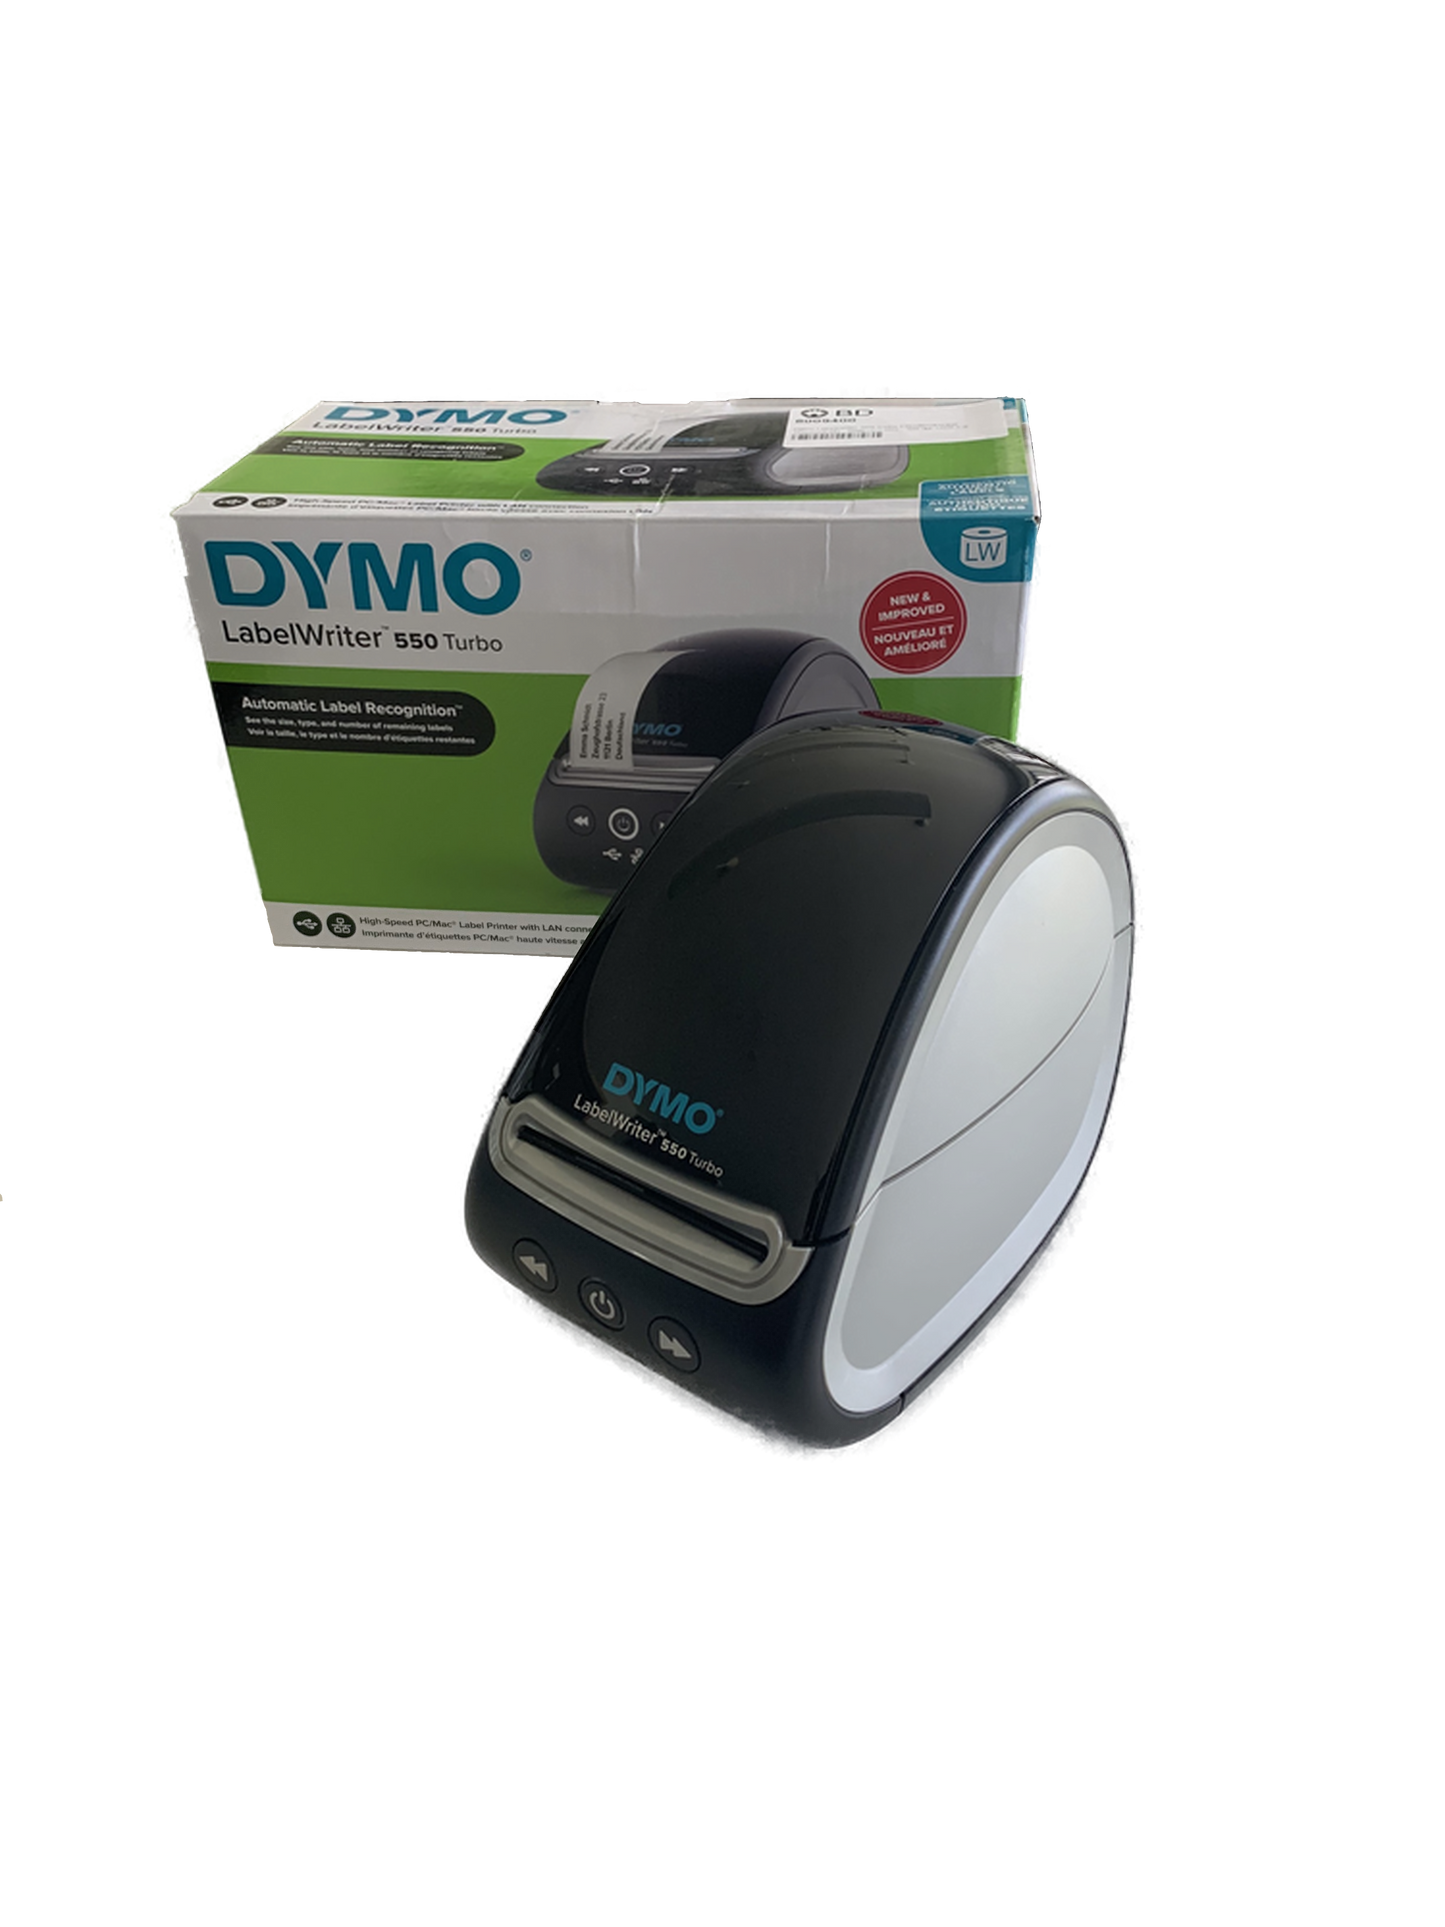 Toplabelprinter Dymo 550 Turbo (ondersteuning voor Pickup Cloud en Part Pack Labelling)